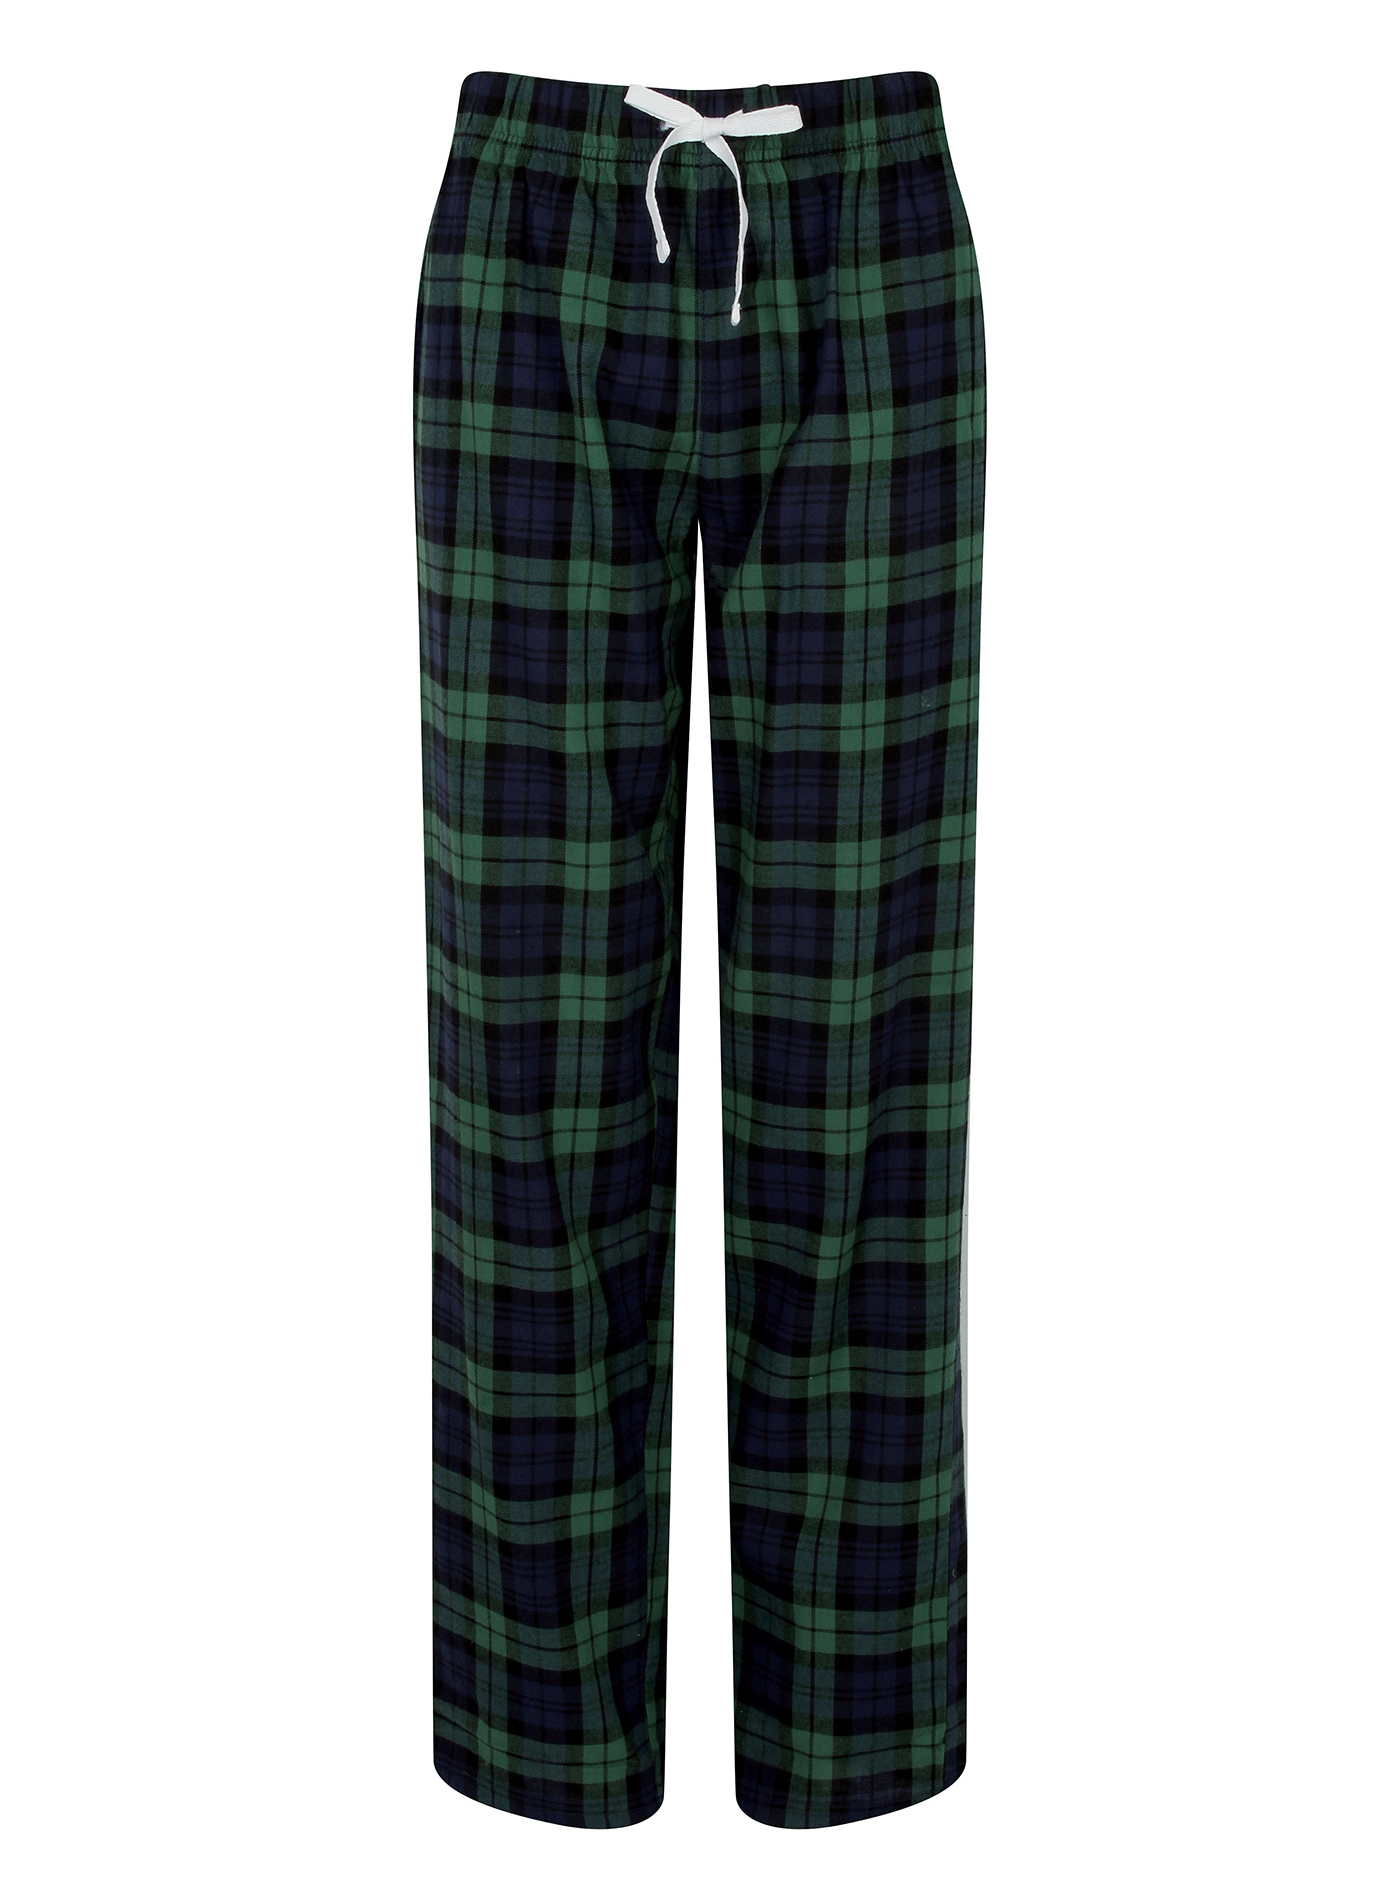 Dámské kalhoty na spaní Skinnifit Tartan - Zelená a modrá S